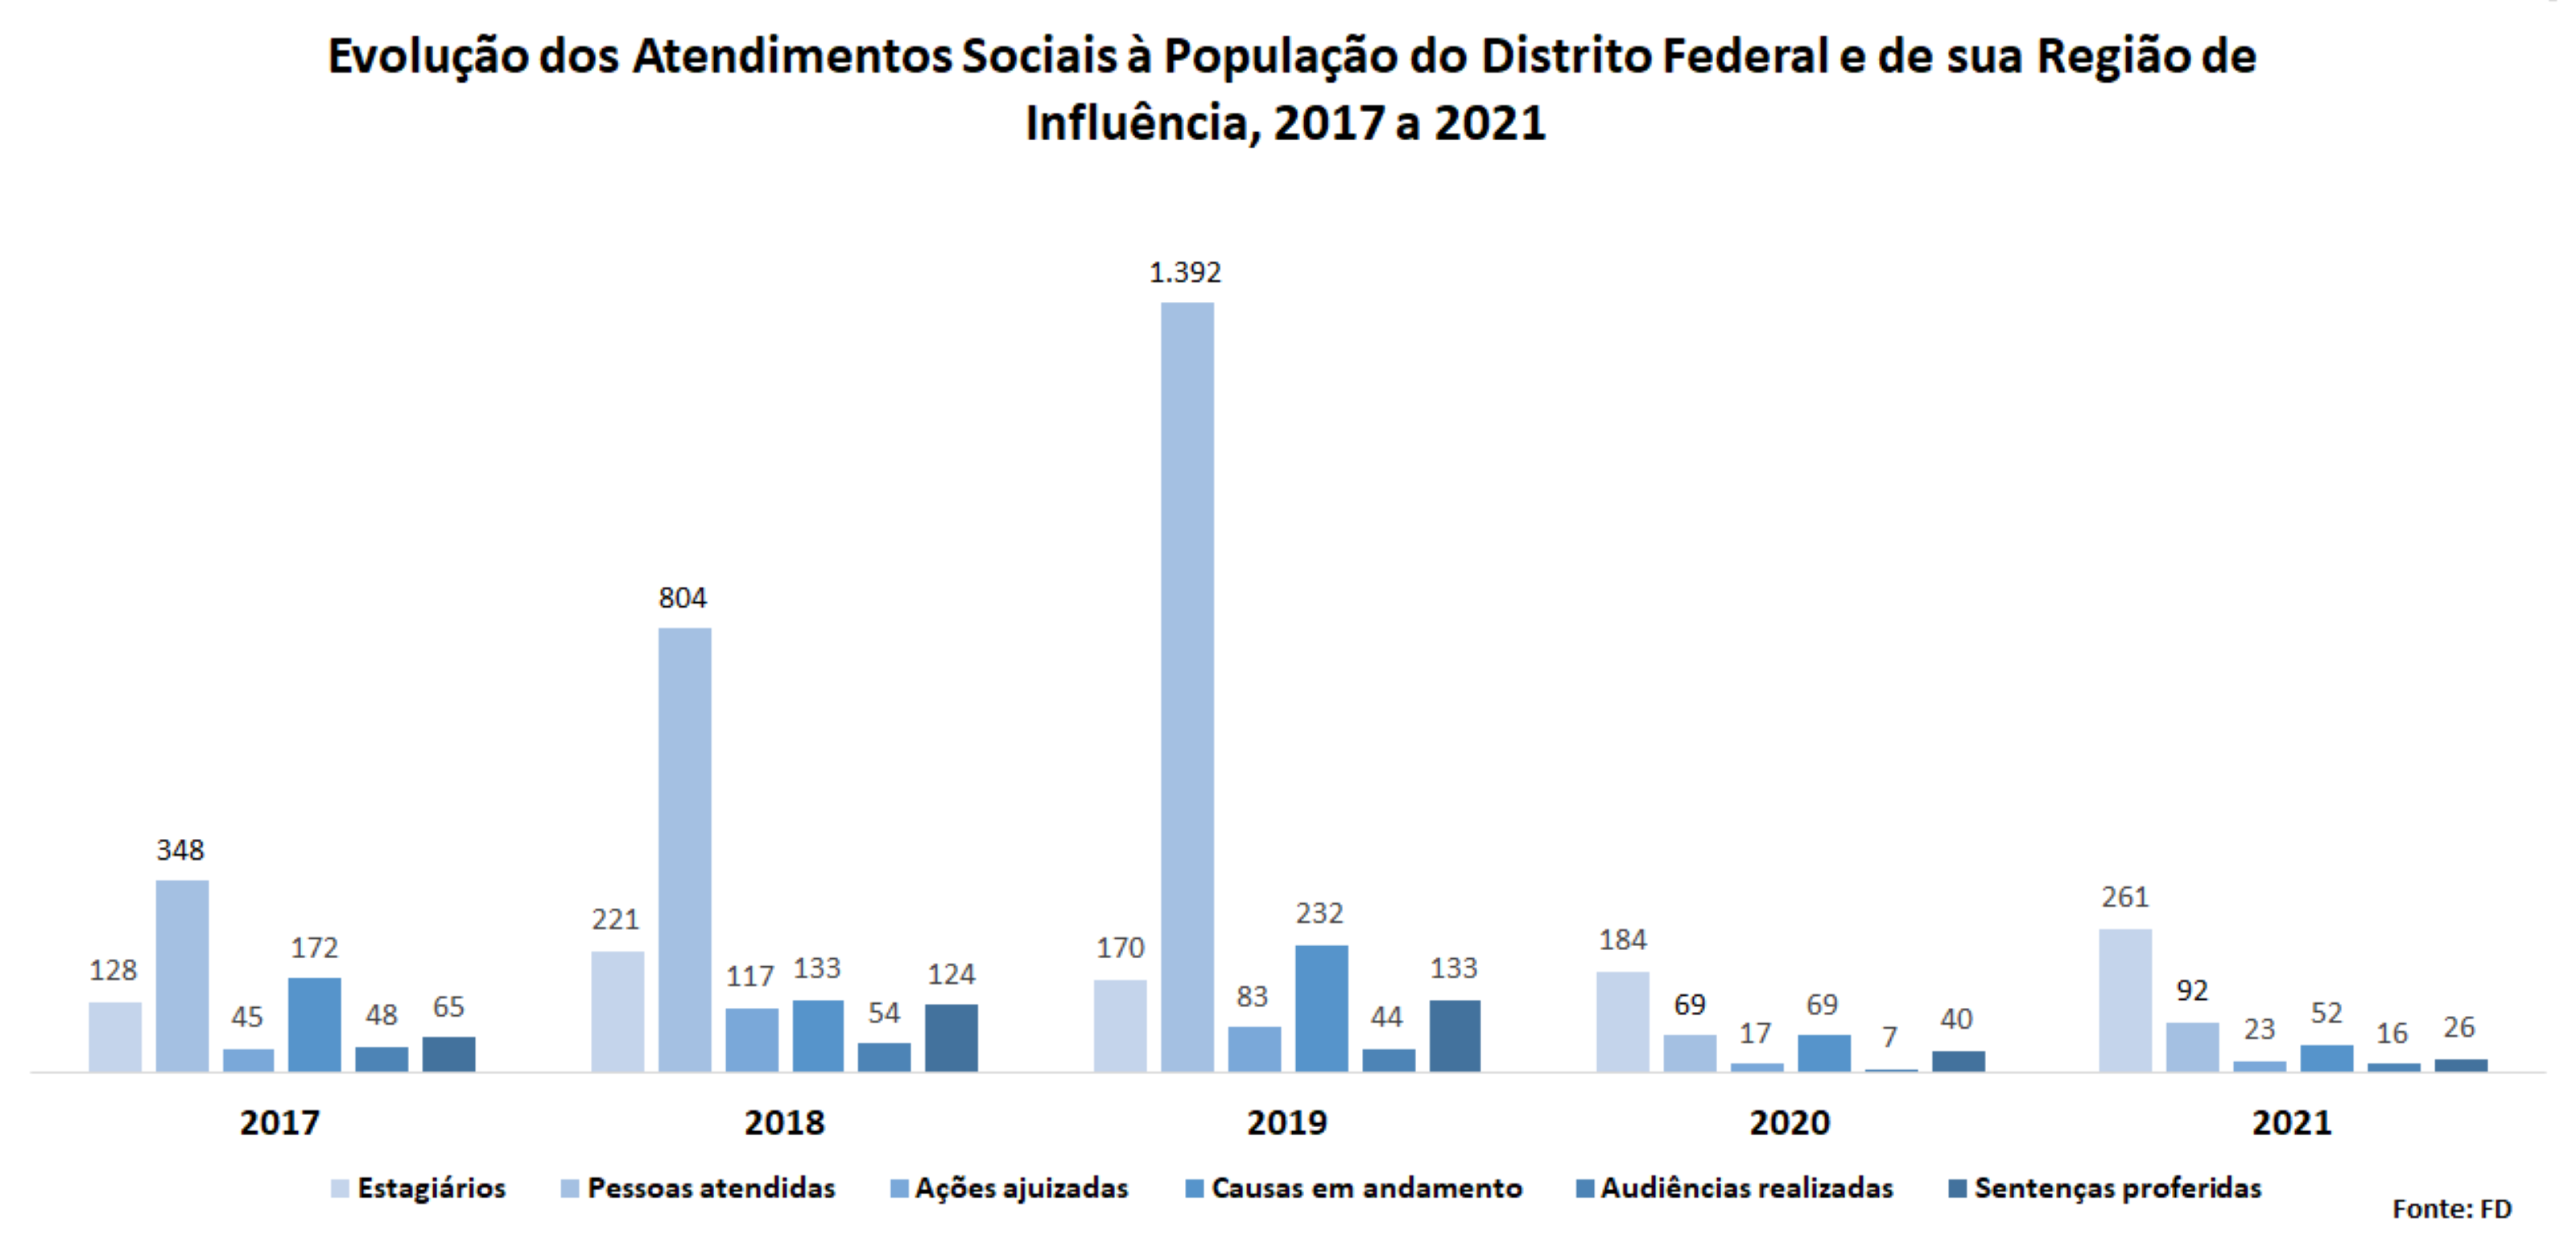 Evolução dos atendimentos sociais à população do Distrito Federal e de sua região de influência, 2017 a 2021